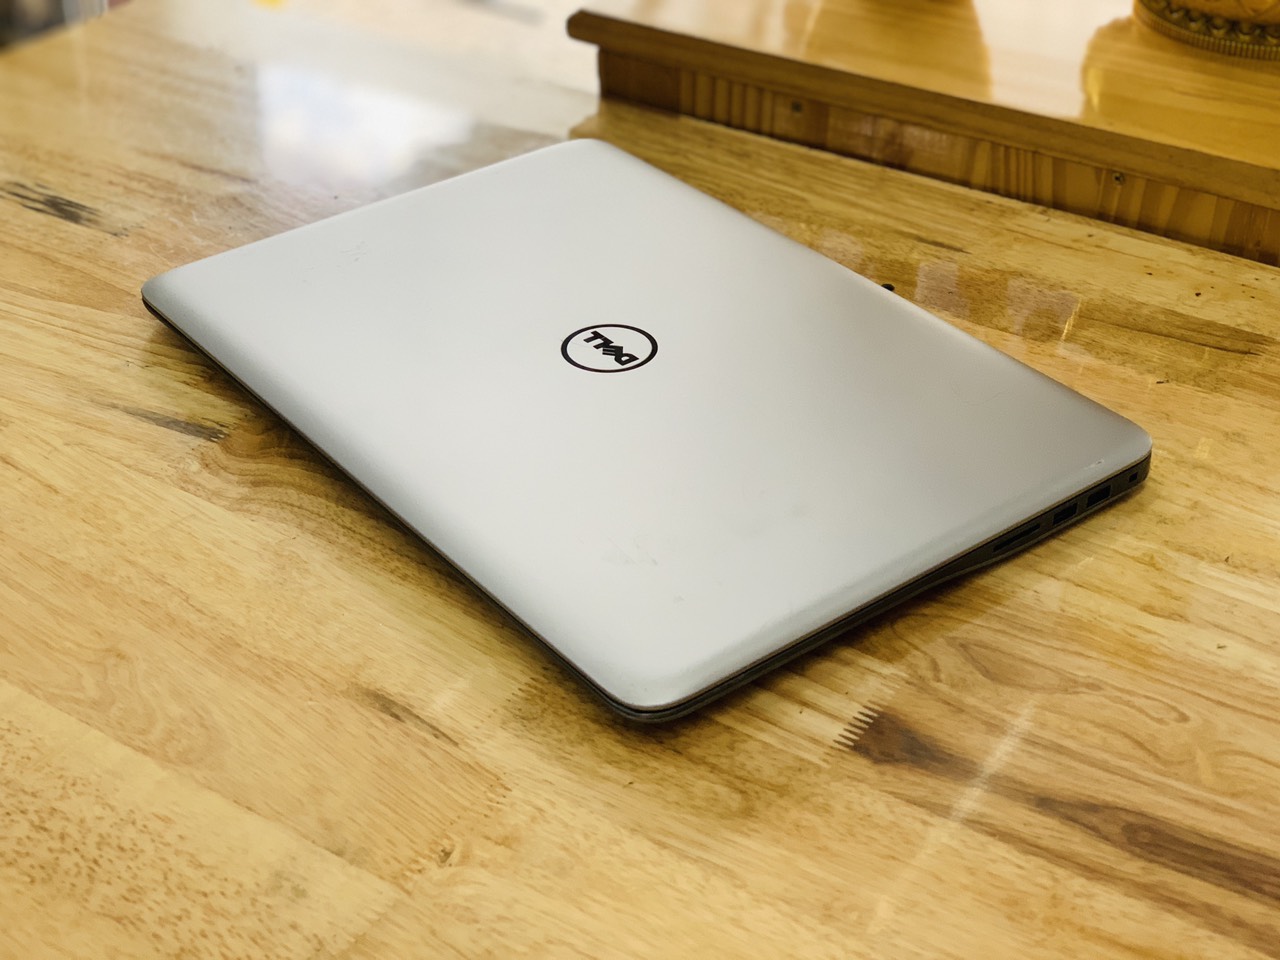 Laptop Dell inspiron 7548 i5-5200U Ram 6GB HDD 1000G Vga Rời 4GB 15.6” Mỏng Đẹp Chiến Game Đồ Họa Đỉnh